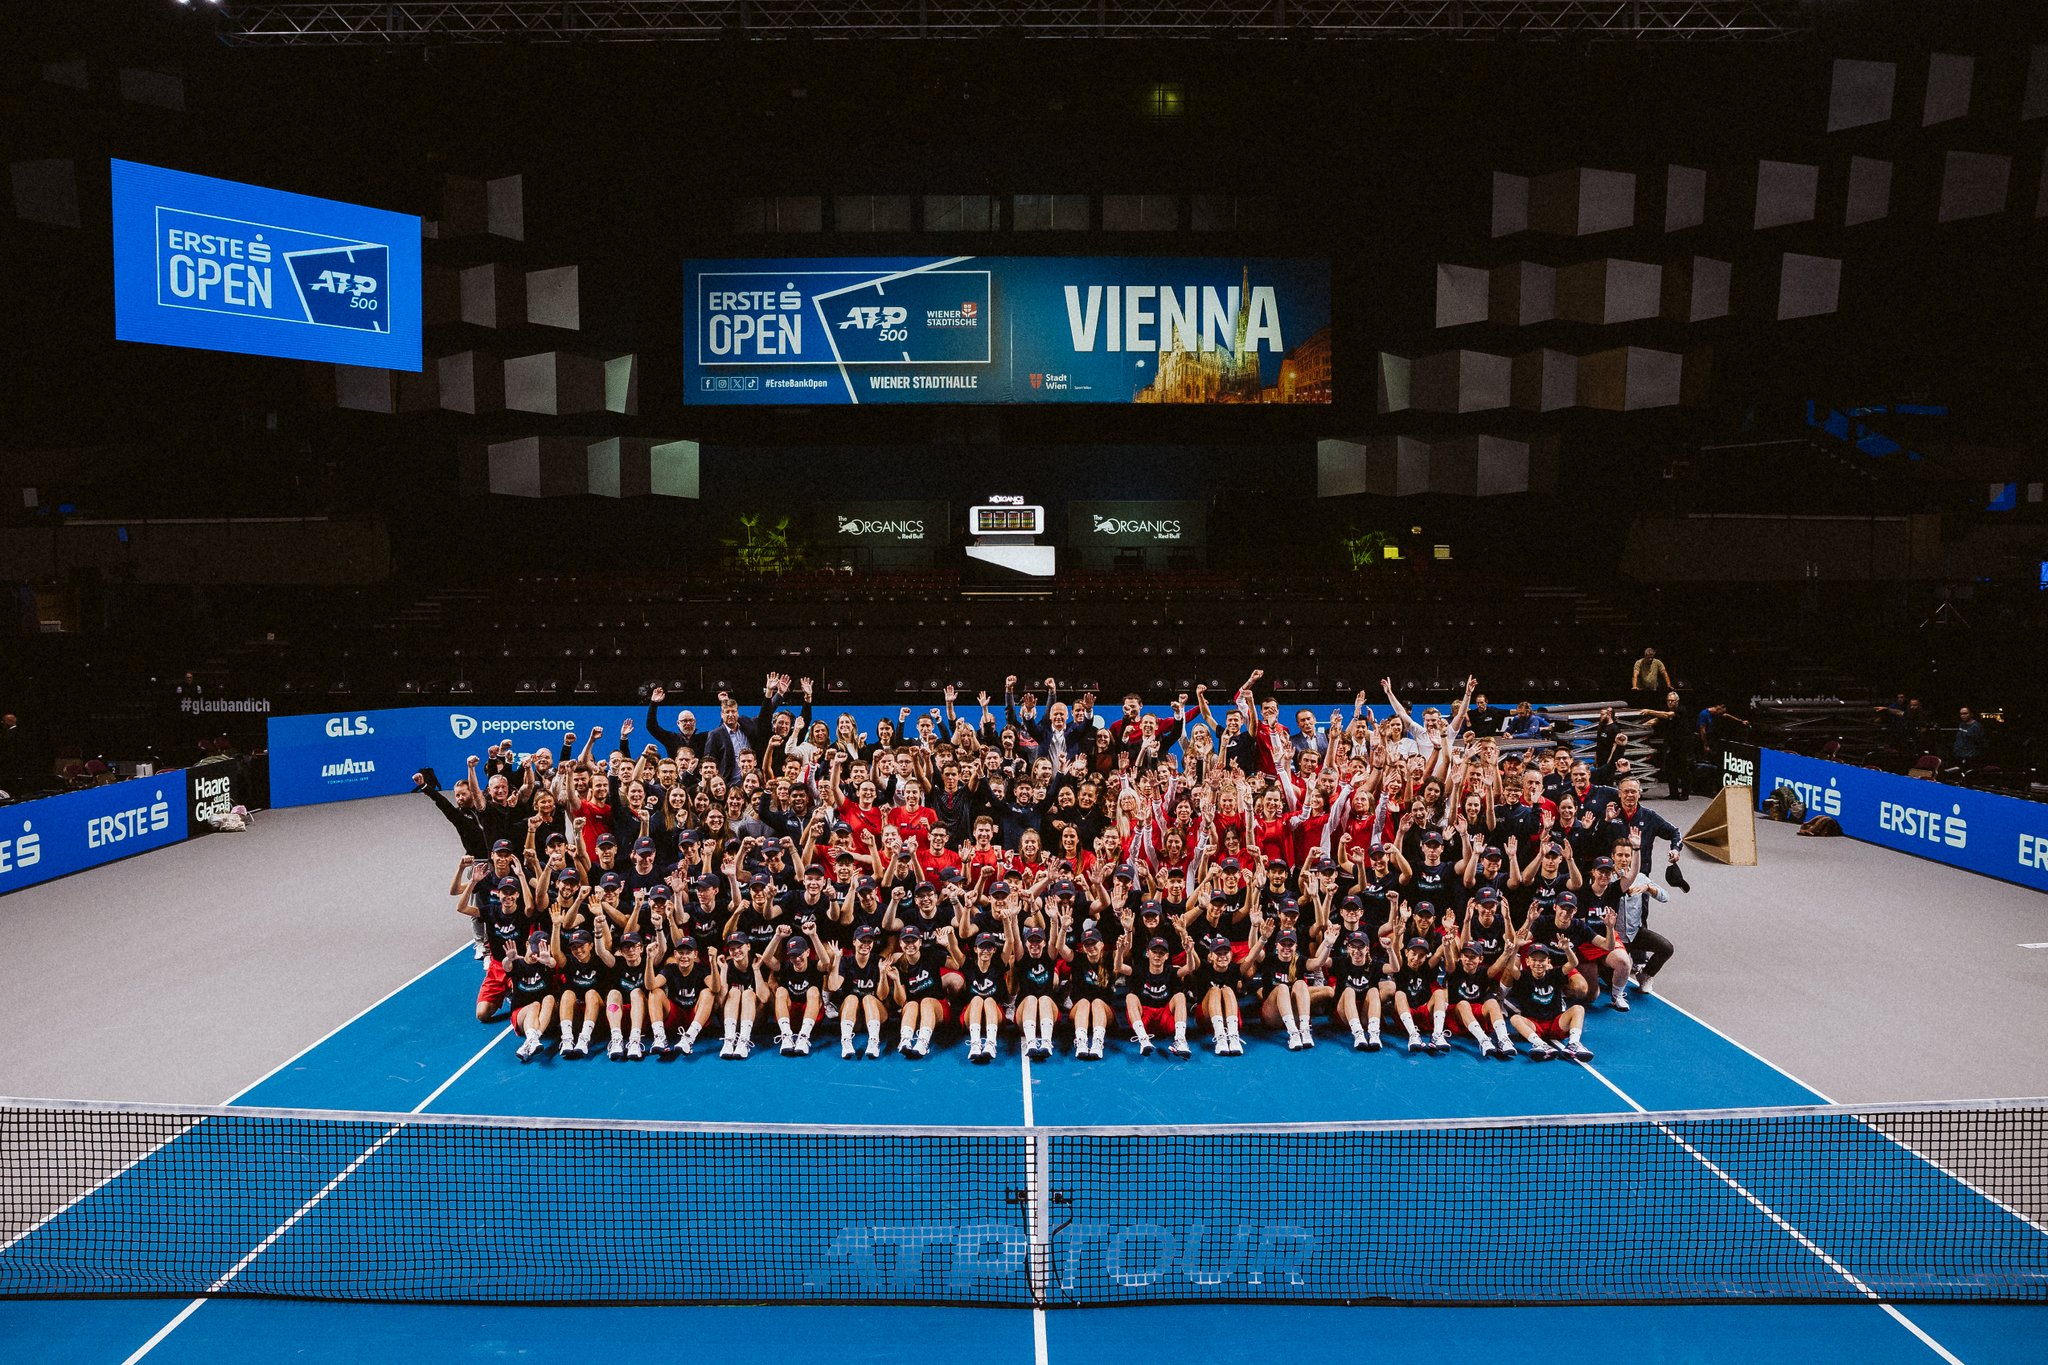 ATP: Erste Bank Open in Vienna voted best 500 ·